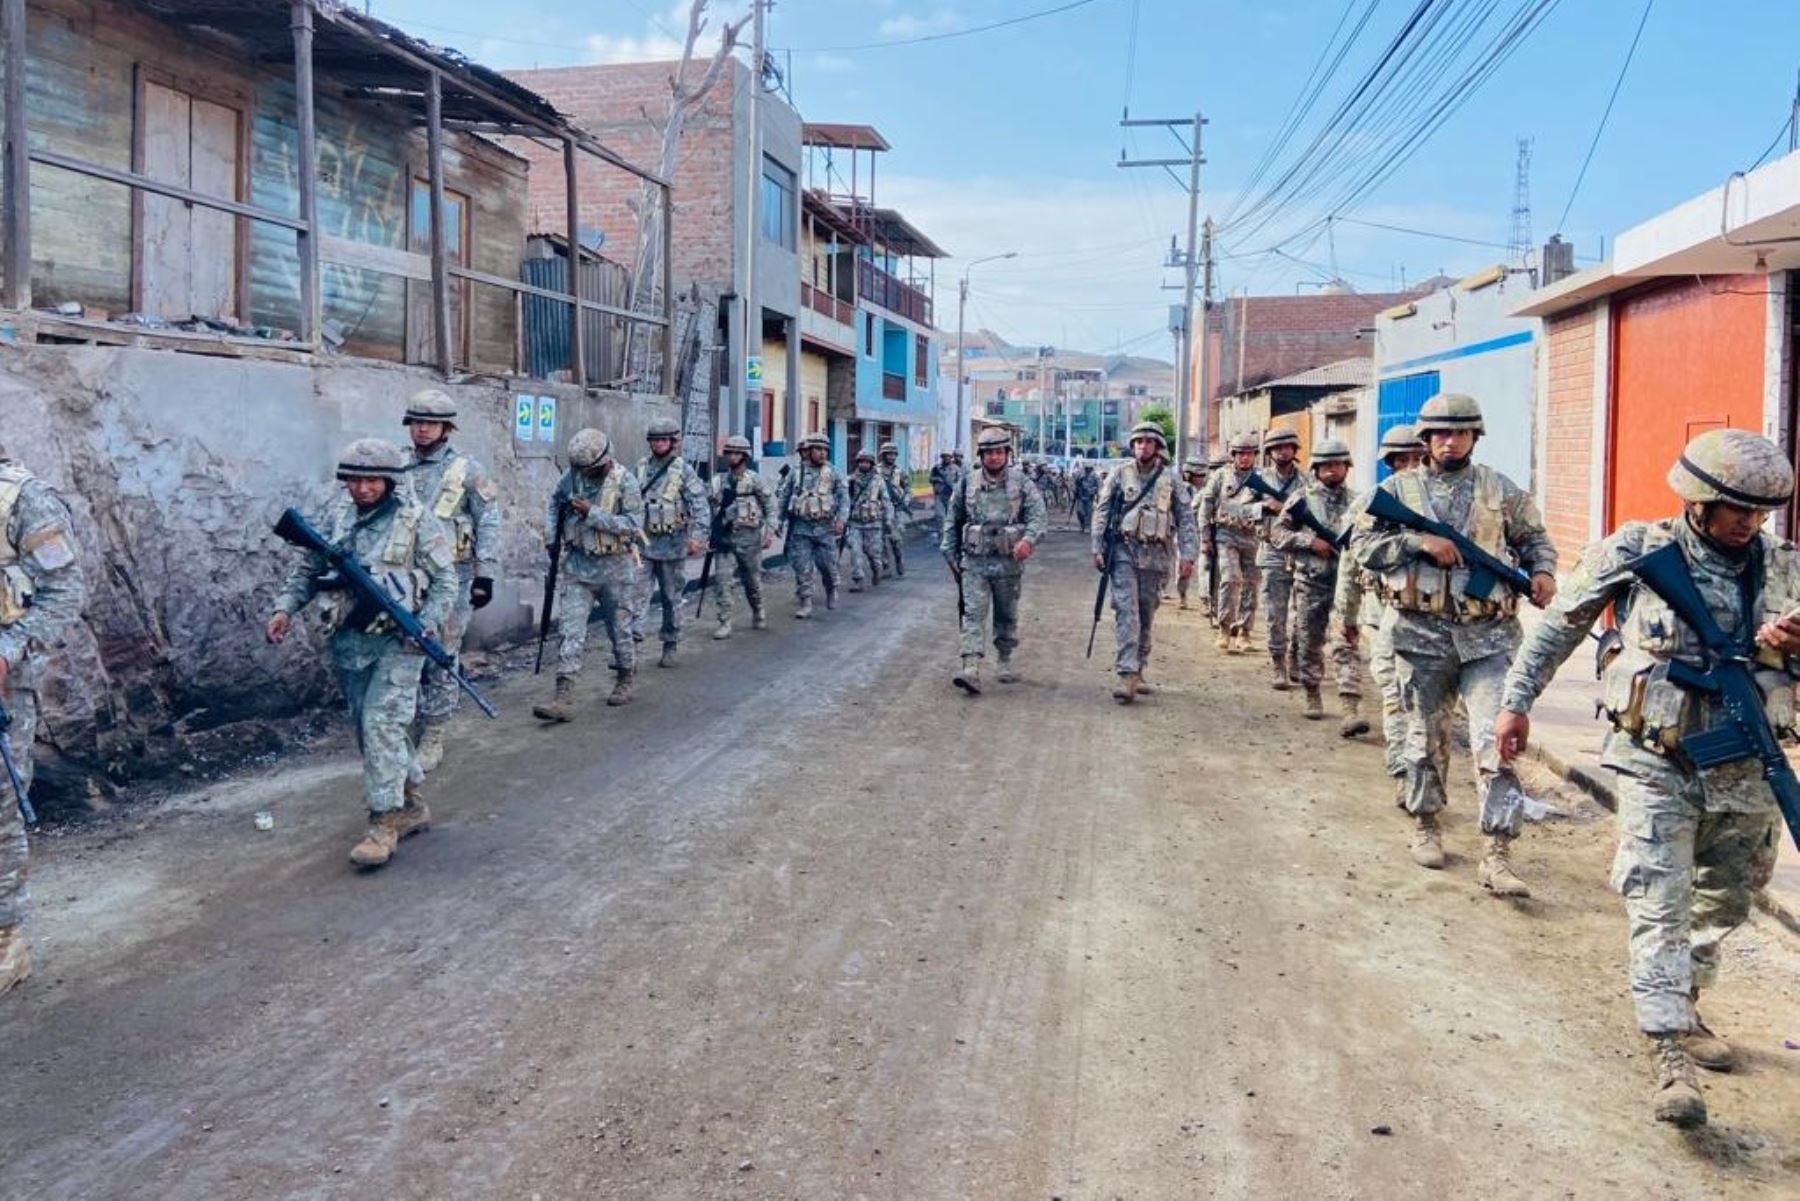 Las patrullas están conformadas por oficiales, técnicos, suboficiales y personal de tropa del servicio militar voluntario. Foto: Cortesía Rocío Méndez